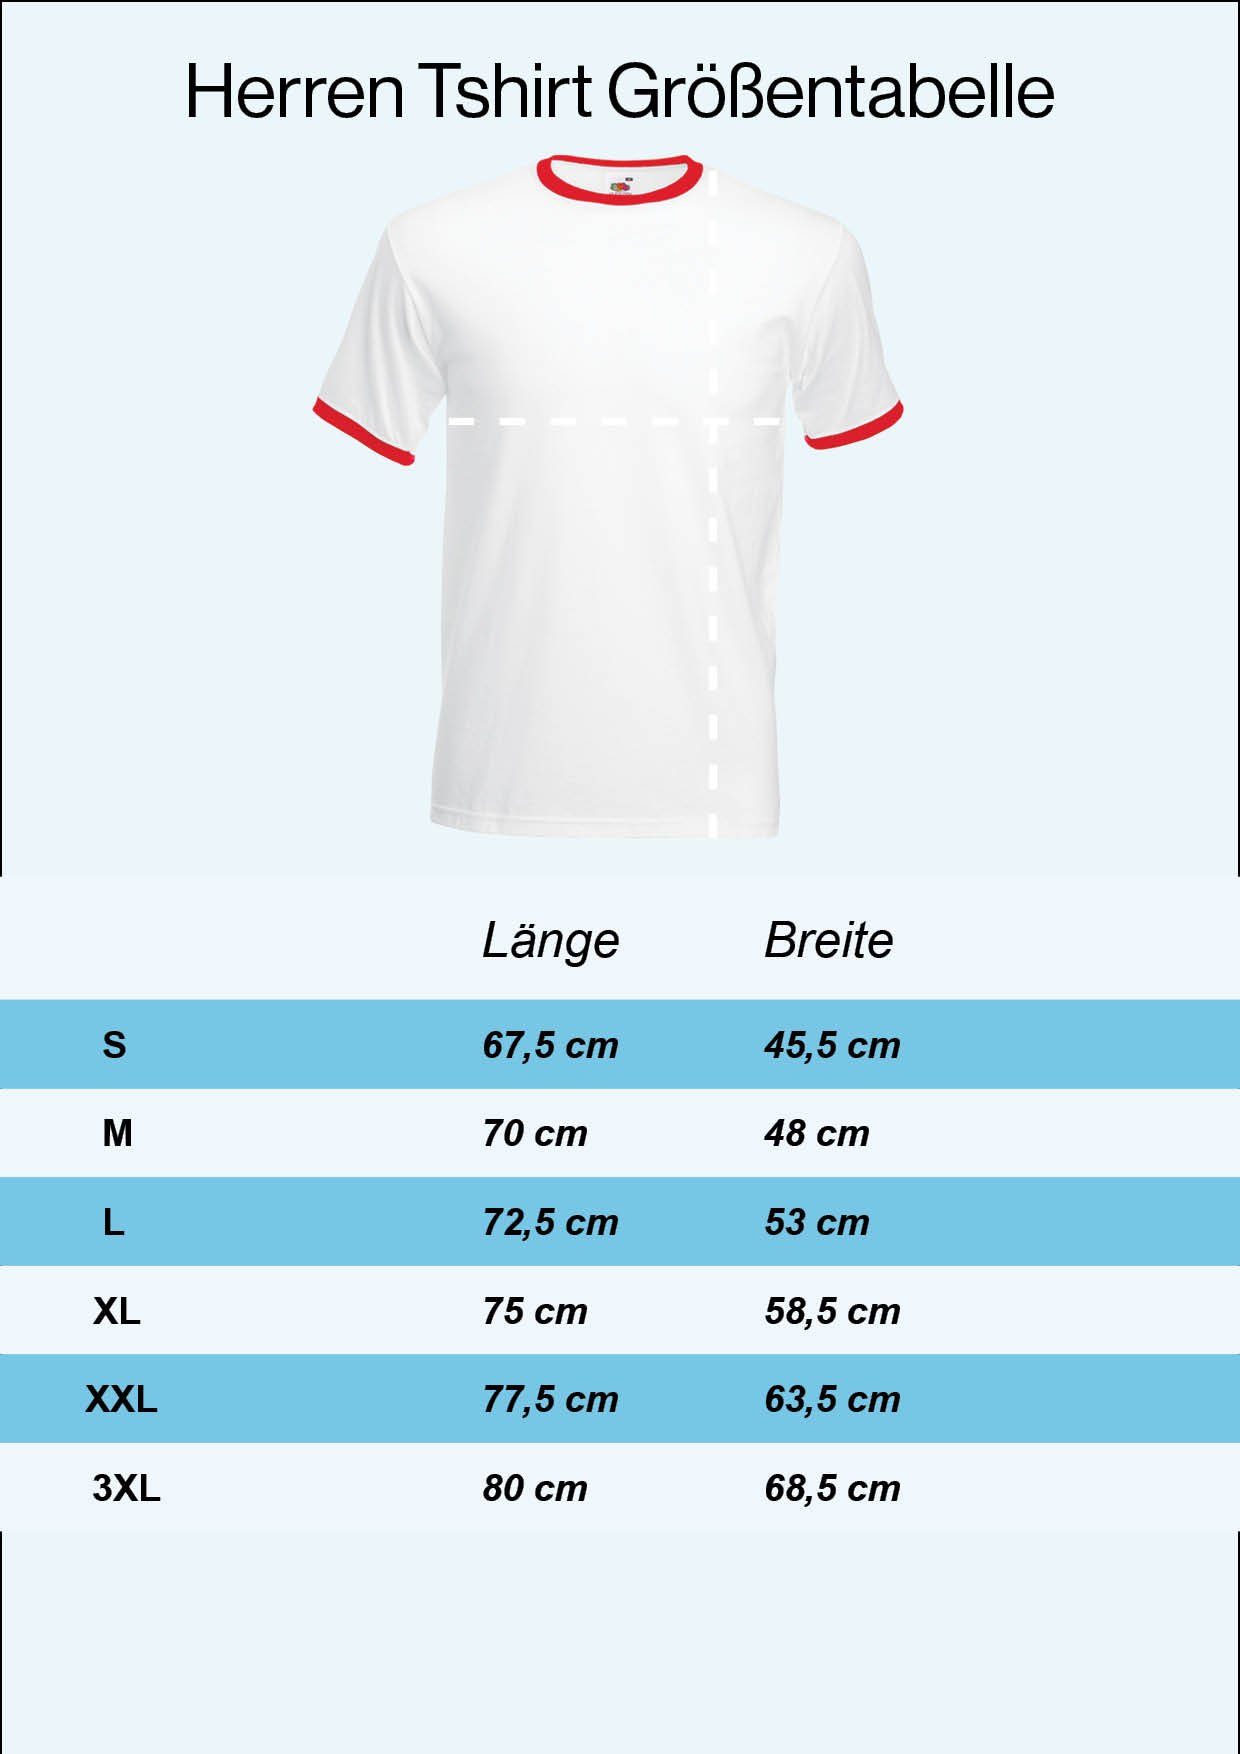 Youth Designz im Fußball T-Shirt trendigem Schweiz Look Trikot Herren Motiv mit T-Shirt Weiß